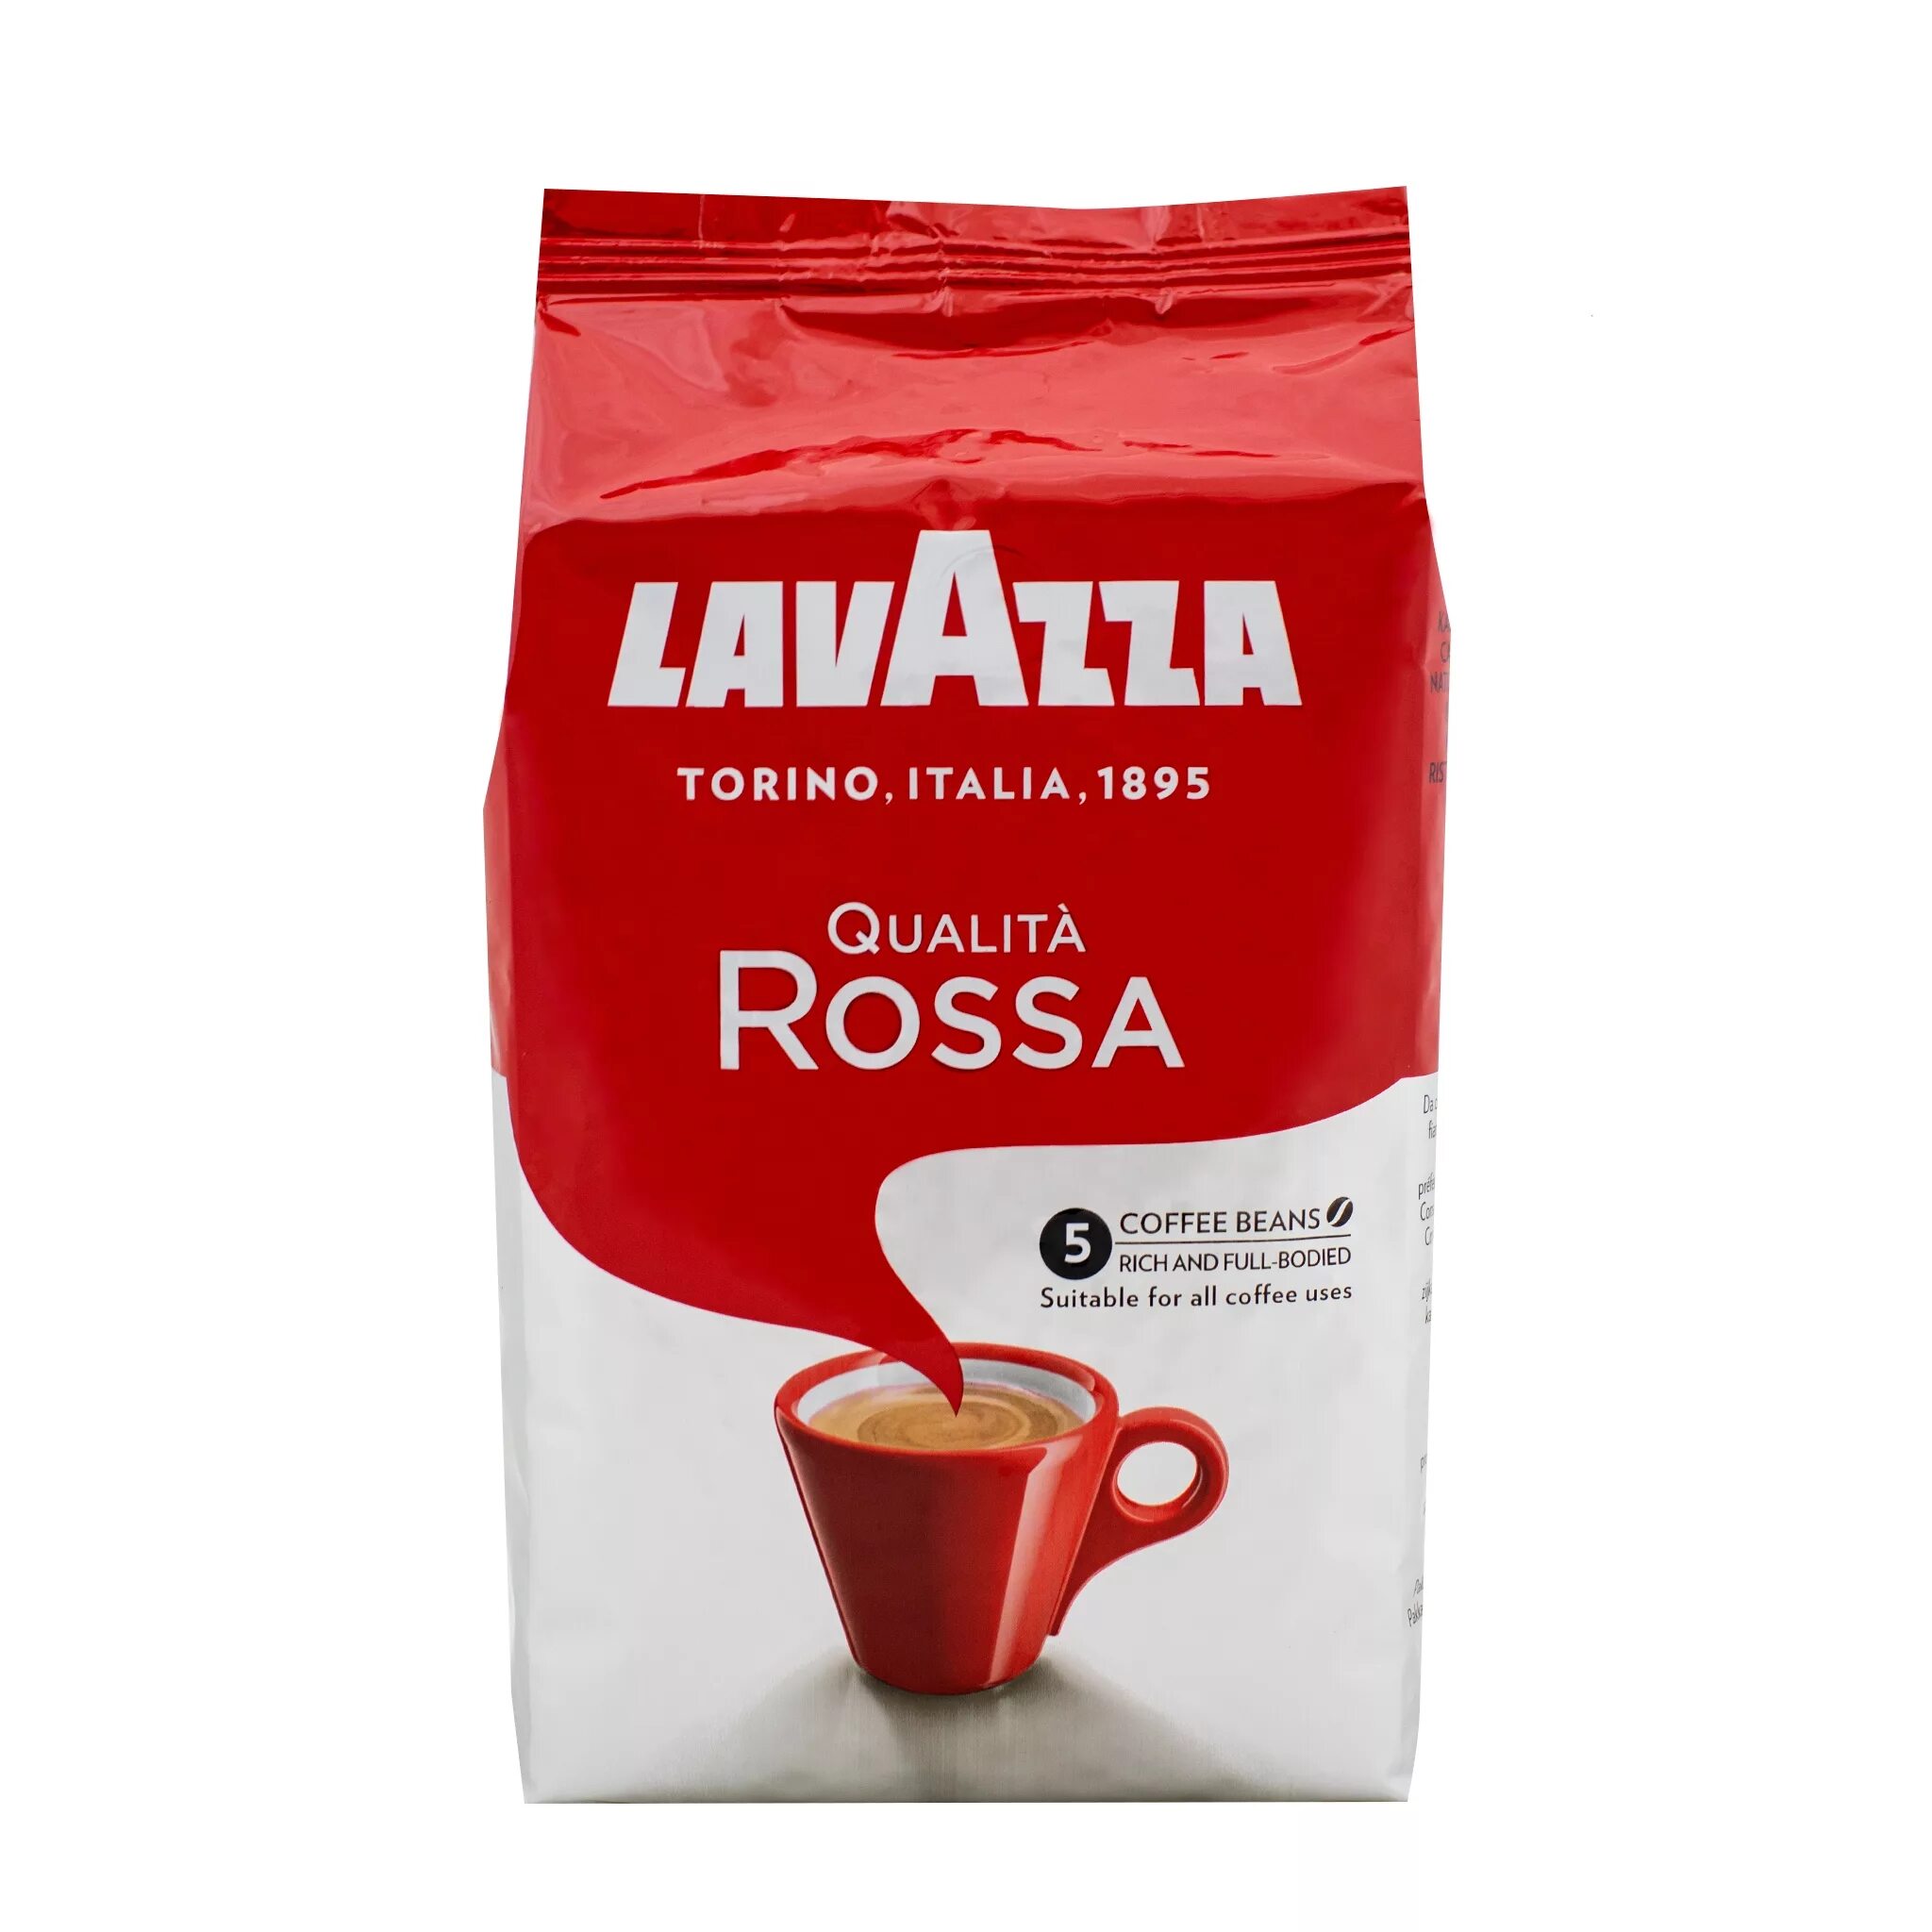 Купить кофе lavazza молотый. Кофе Лавацца Росса молотый. Лавацца Росса в зернах 1 кг. Кофе в зернах Lavazza qualita Rossa. Кофе в зернах Lavazza qualita Rossa, 1 кг.